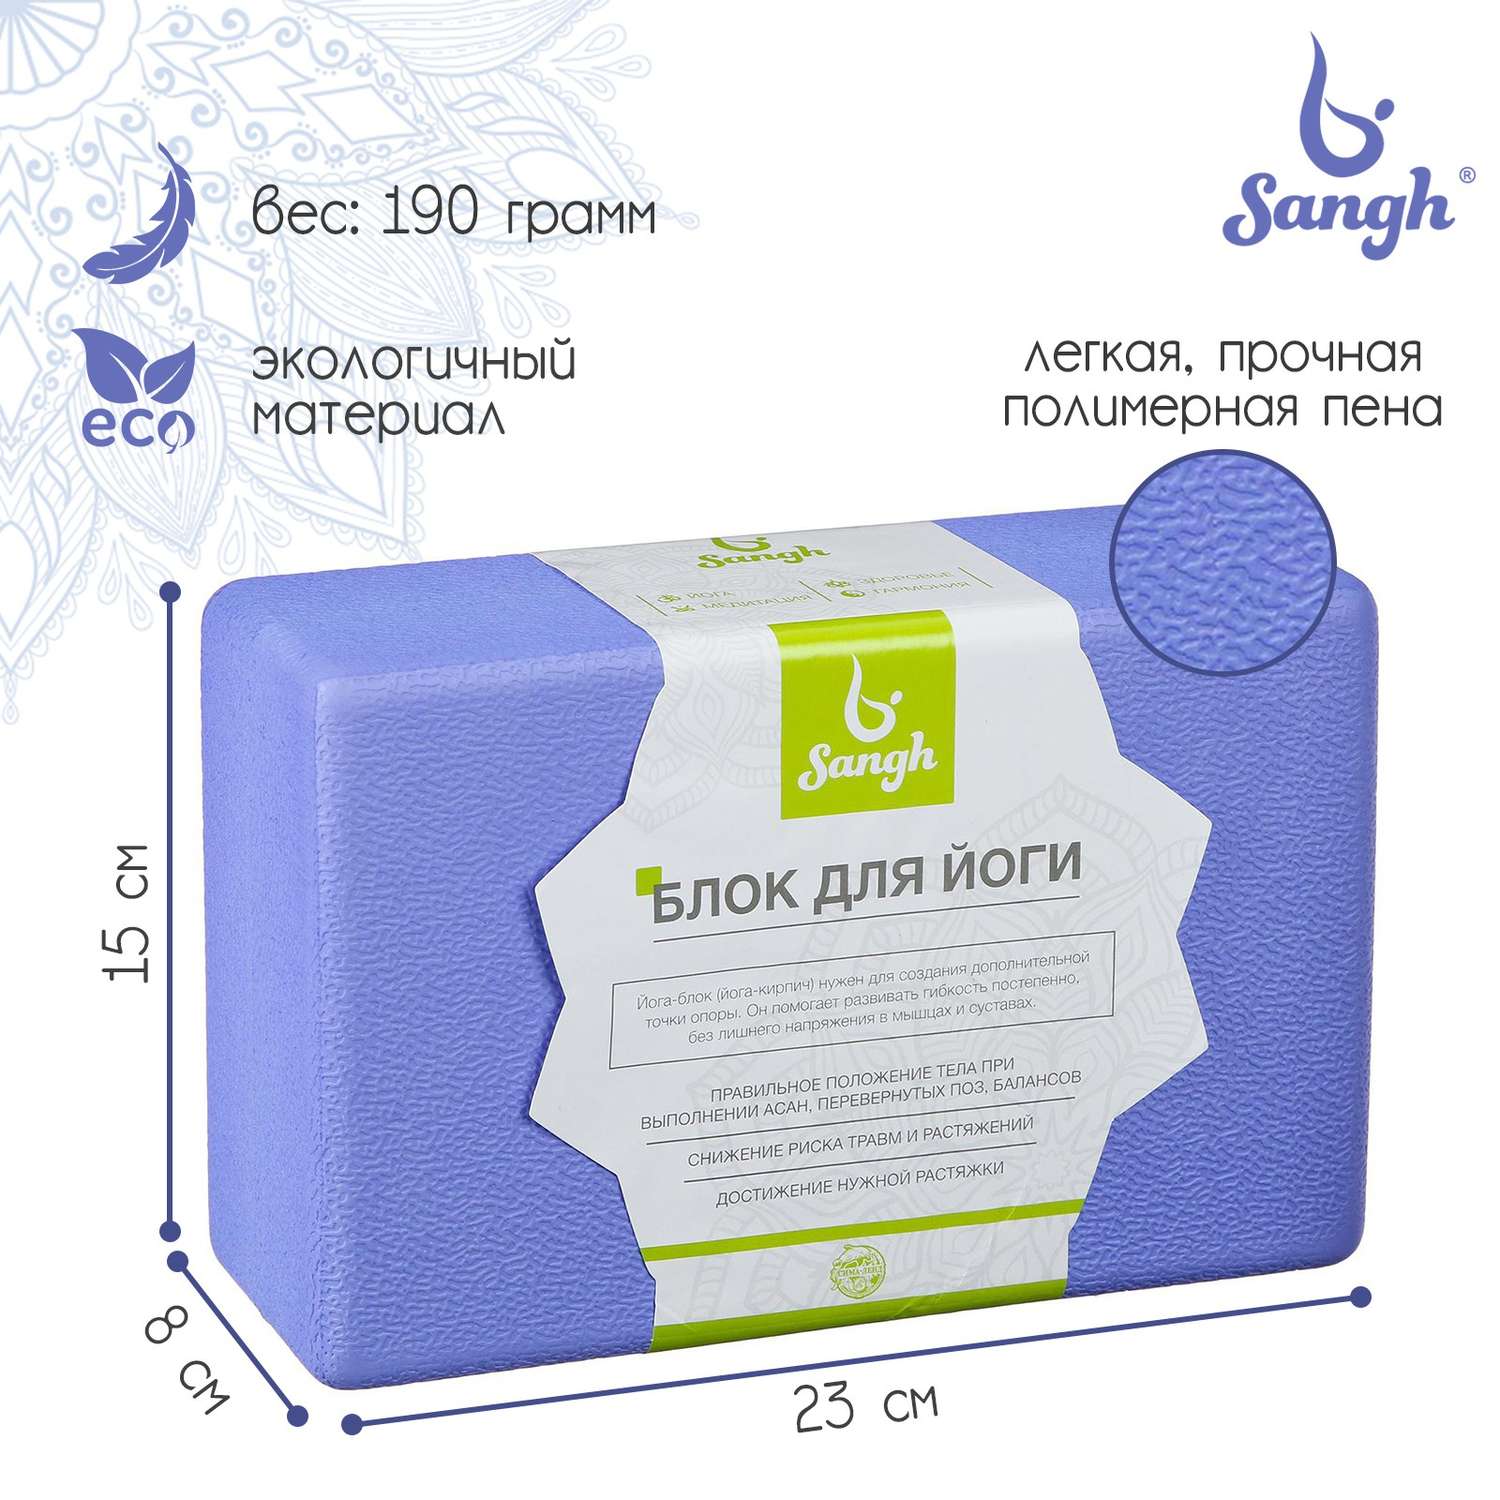 Блок для йоги Sangh 23 × 15 × 8 см. 190 г. ребристый. цвет фиолетовый - фото 1